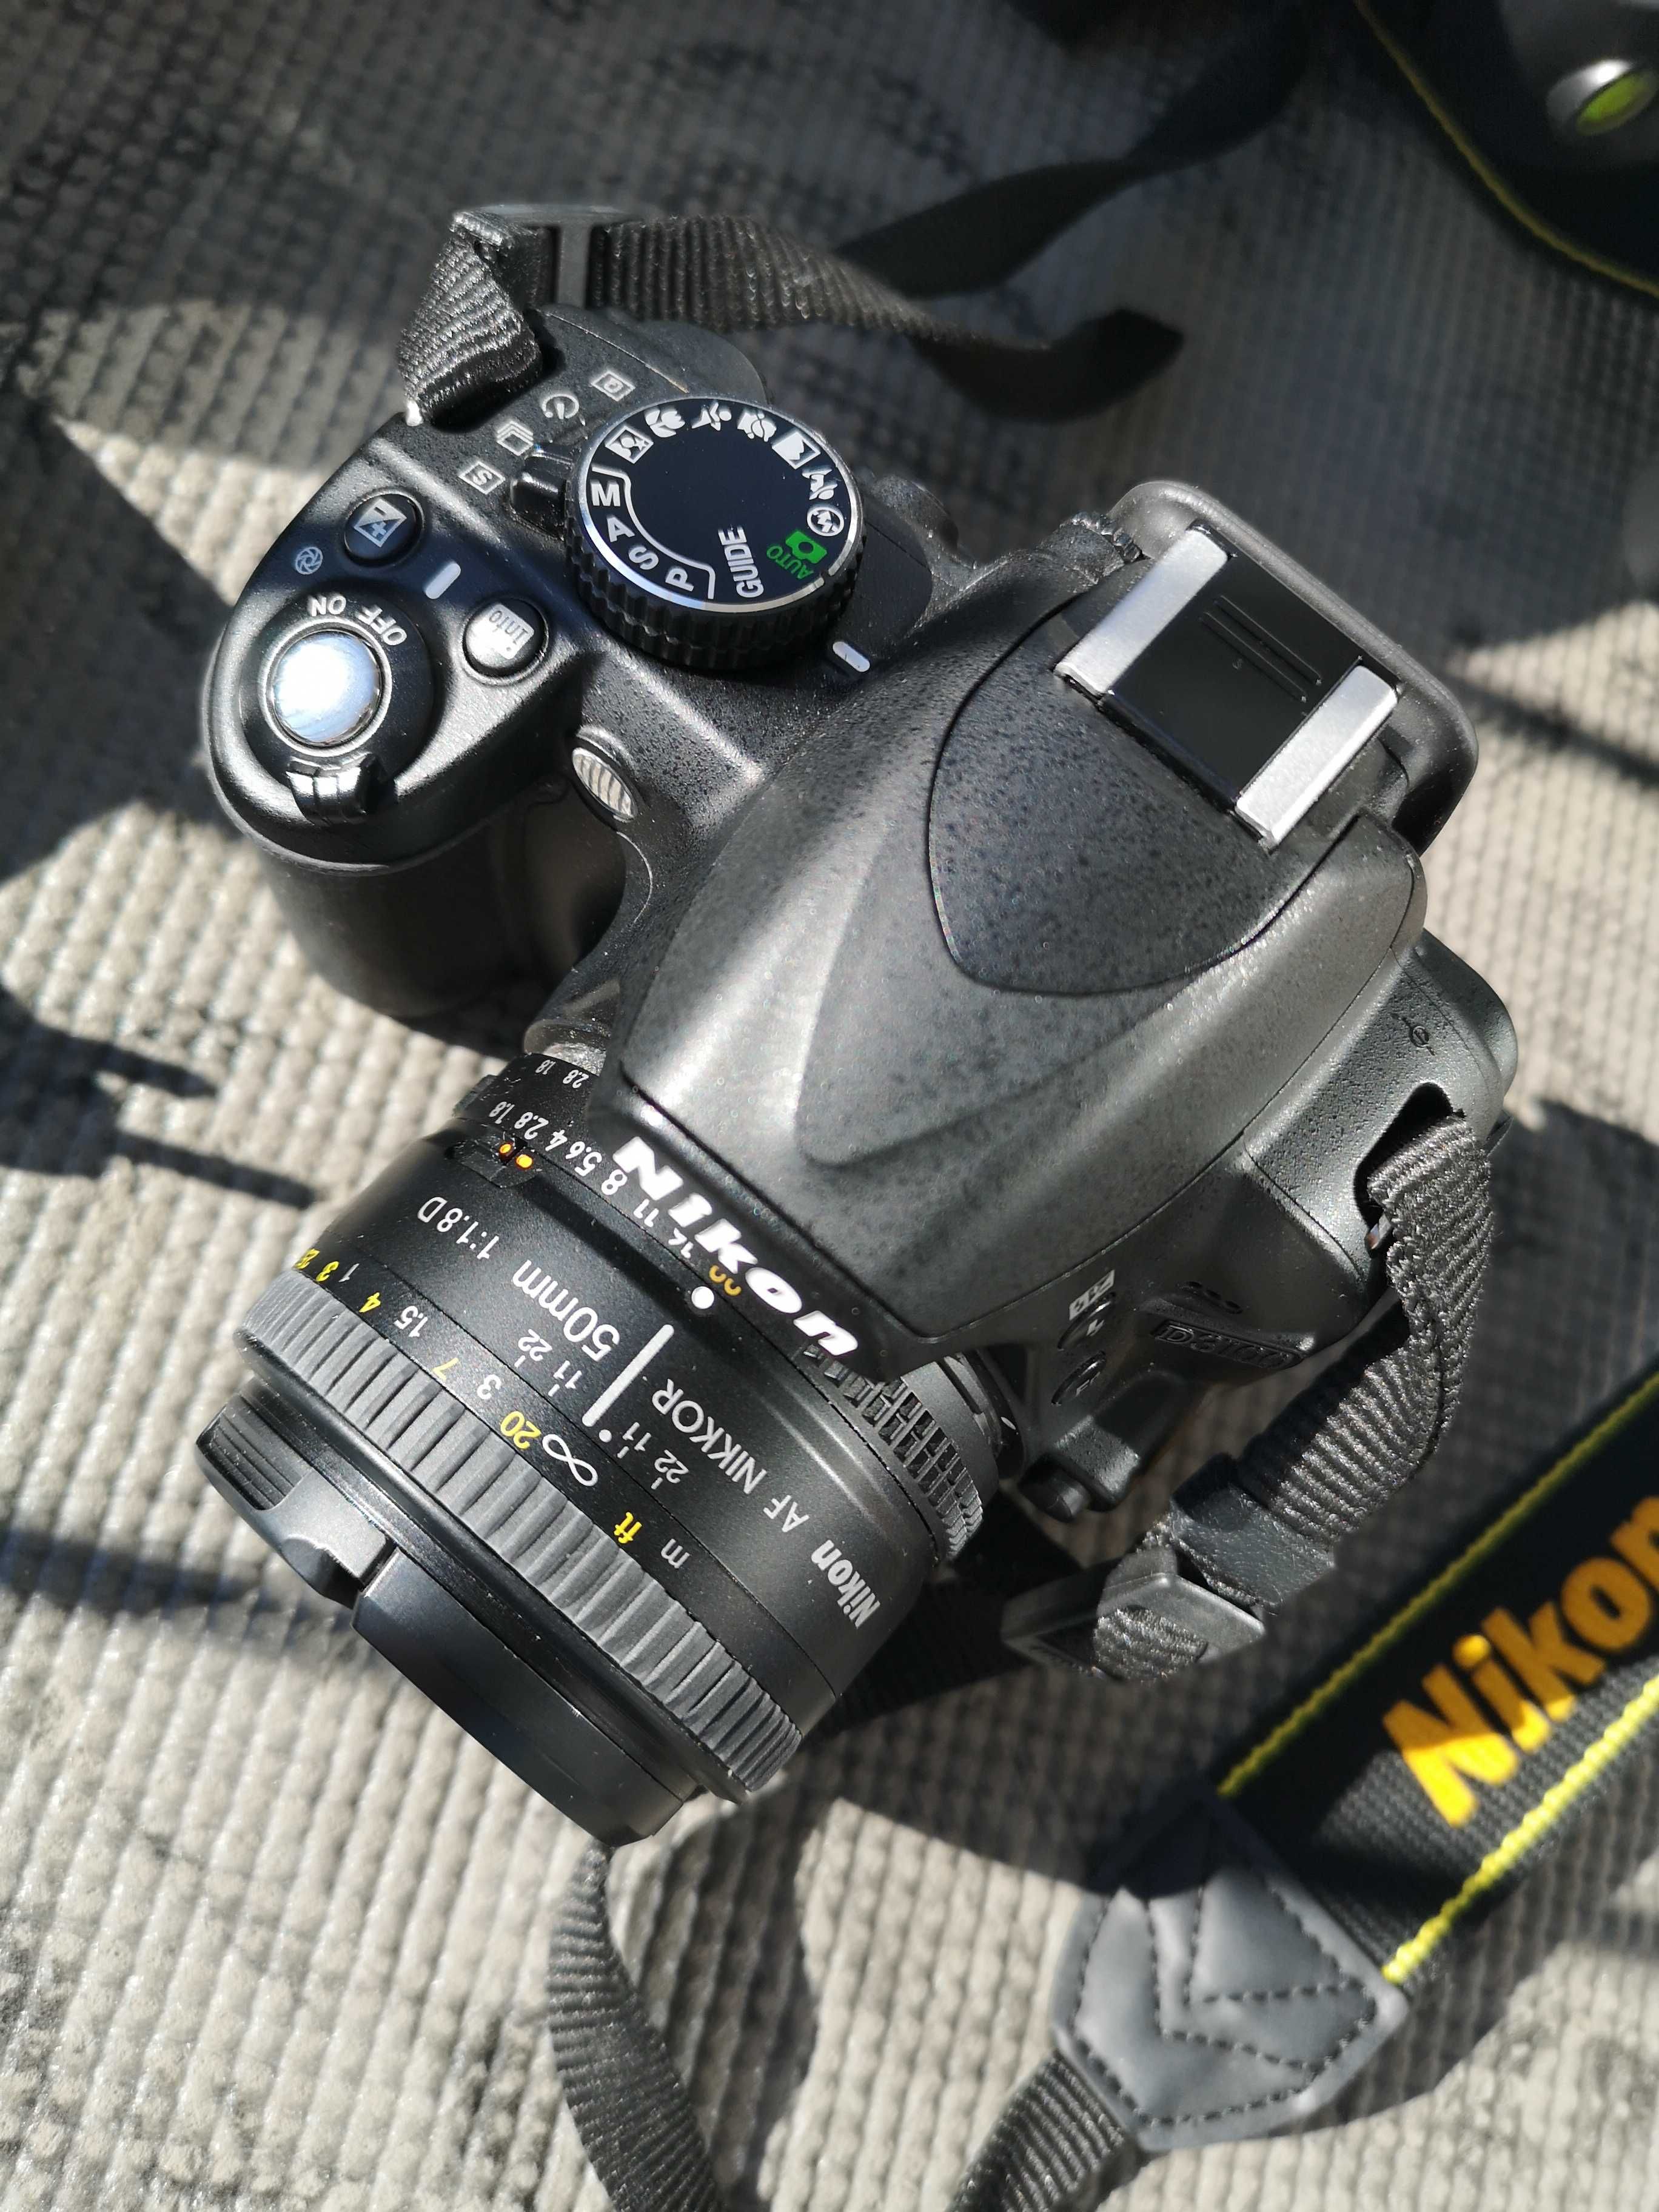 Aparat Nikon d3100, 2 obiektywy, torba, statyw